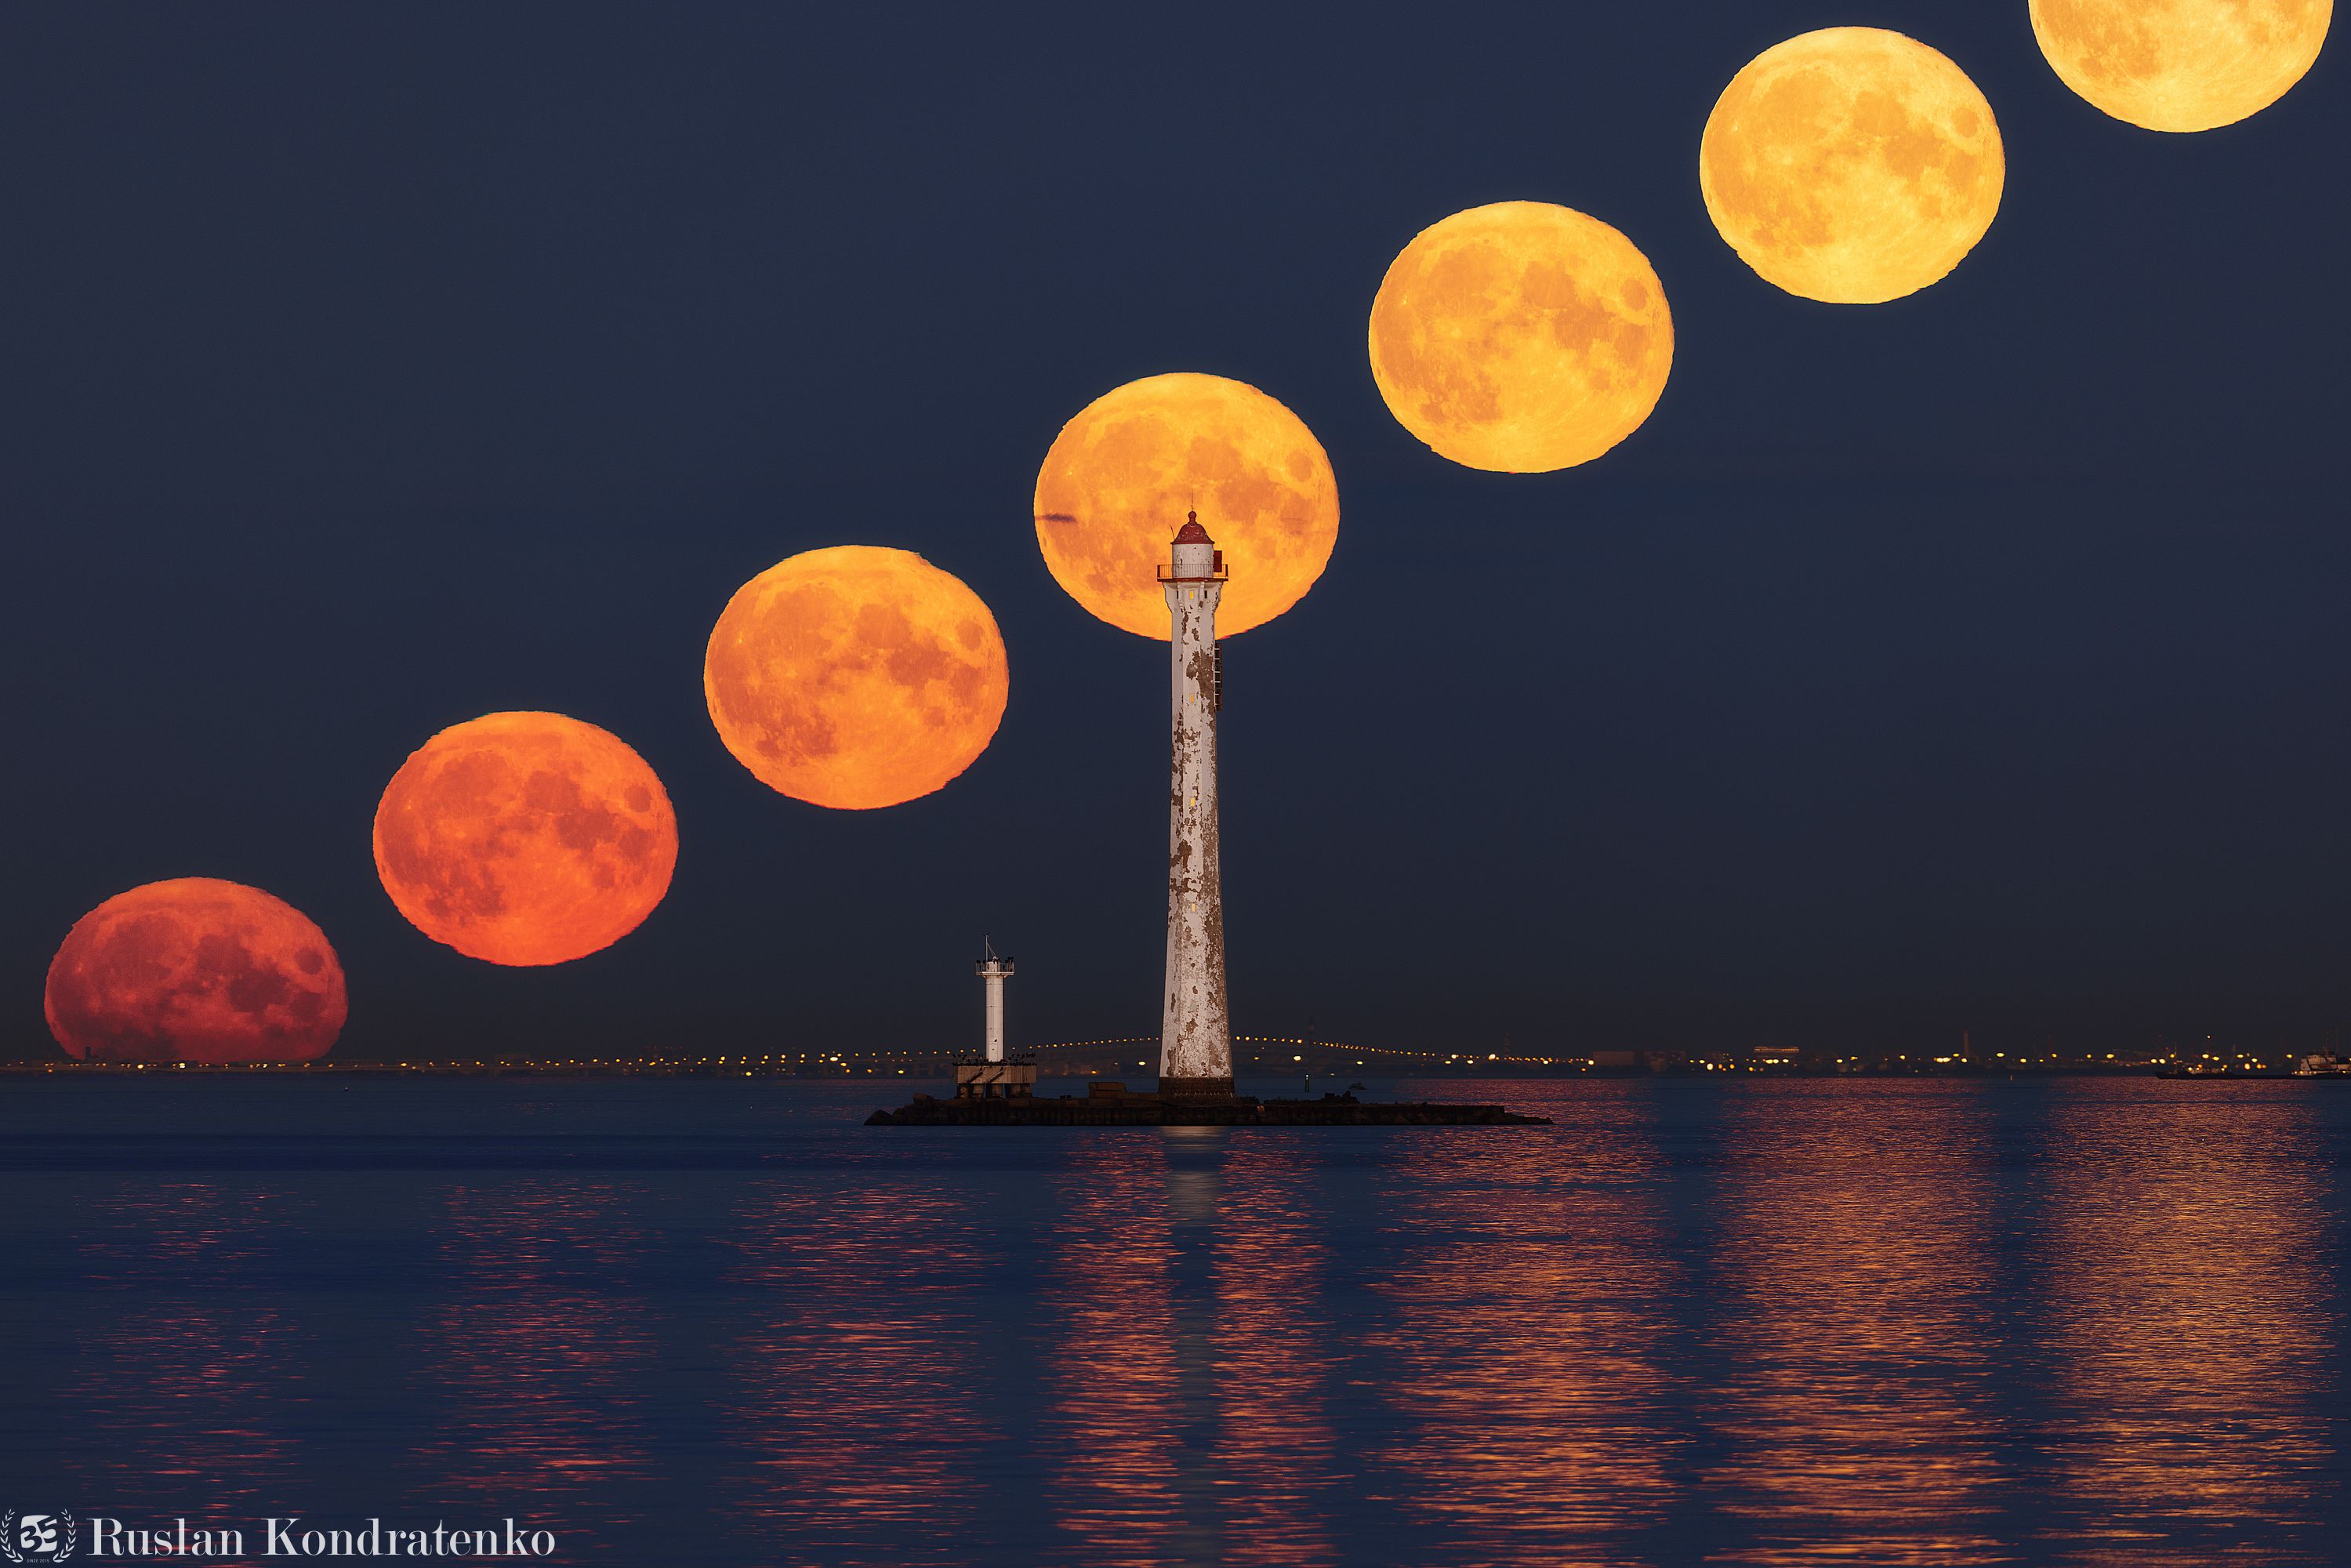 санкт-петербург, луна, полнолуние, восход луны, прострел, заход луны, секвенция, секвенция с луной, маяк, задний створный маяк, задний створный маяк морского канала, Кондратенко Руслан